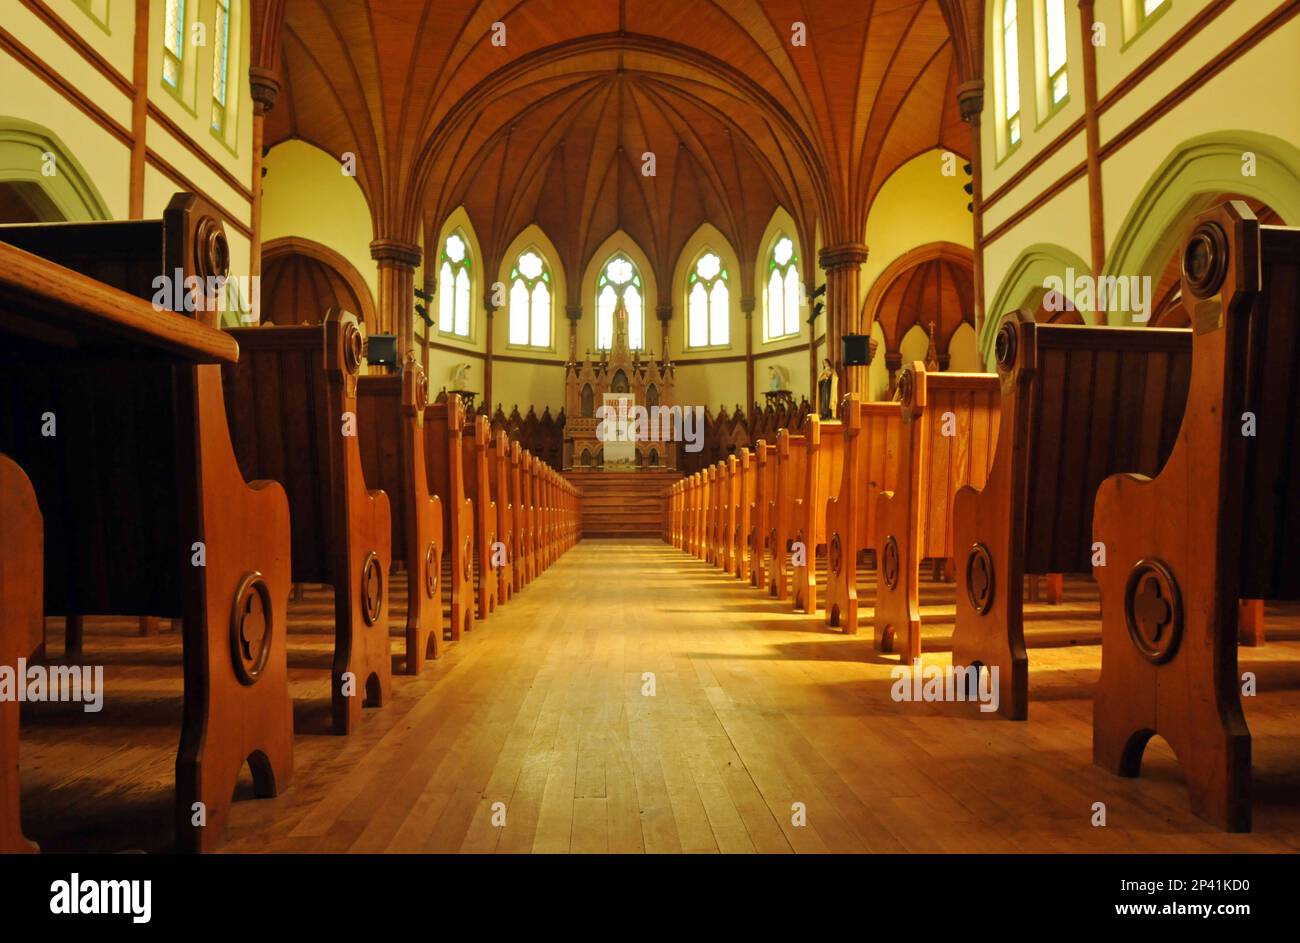 Bänke säumen das Innere des Wahrzeichens St. Mary's Church am Indian River, PEI. In der Kirche von 1902 findet heute das Under the Spire Music Festival statt. Stockfoto